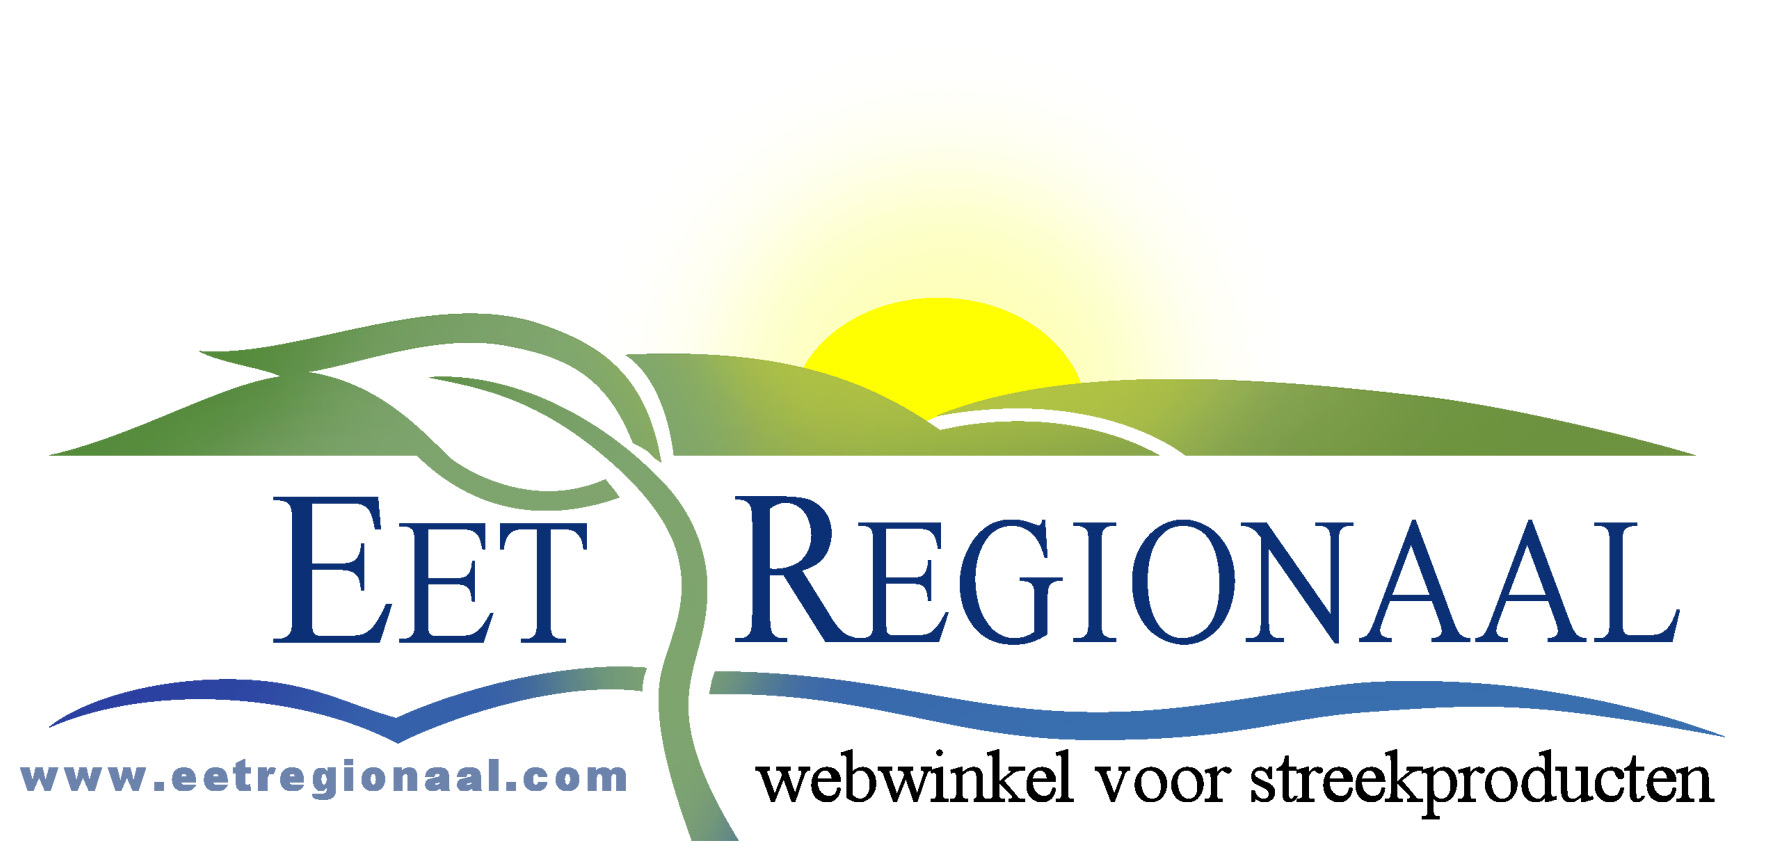 Eet Regionaal streekproducten webwinkel